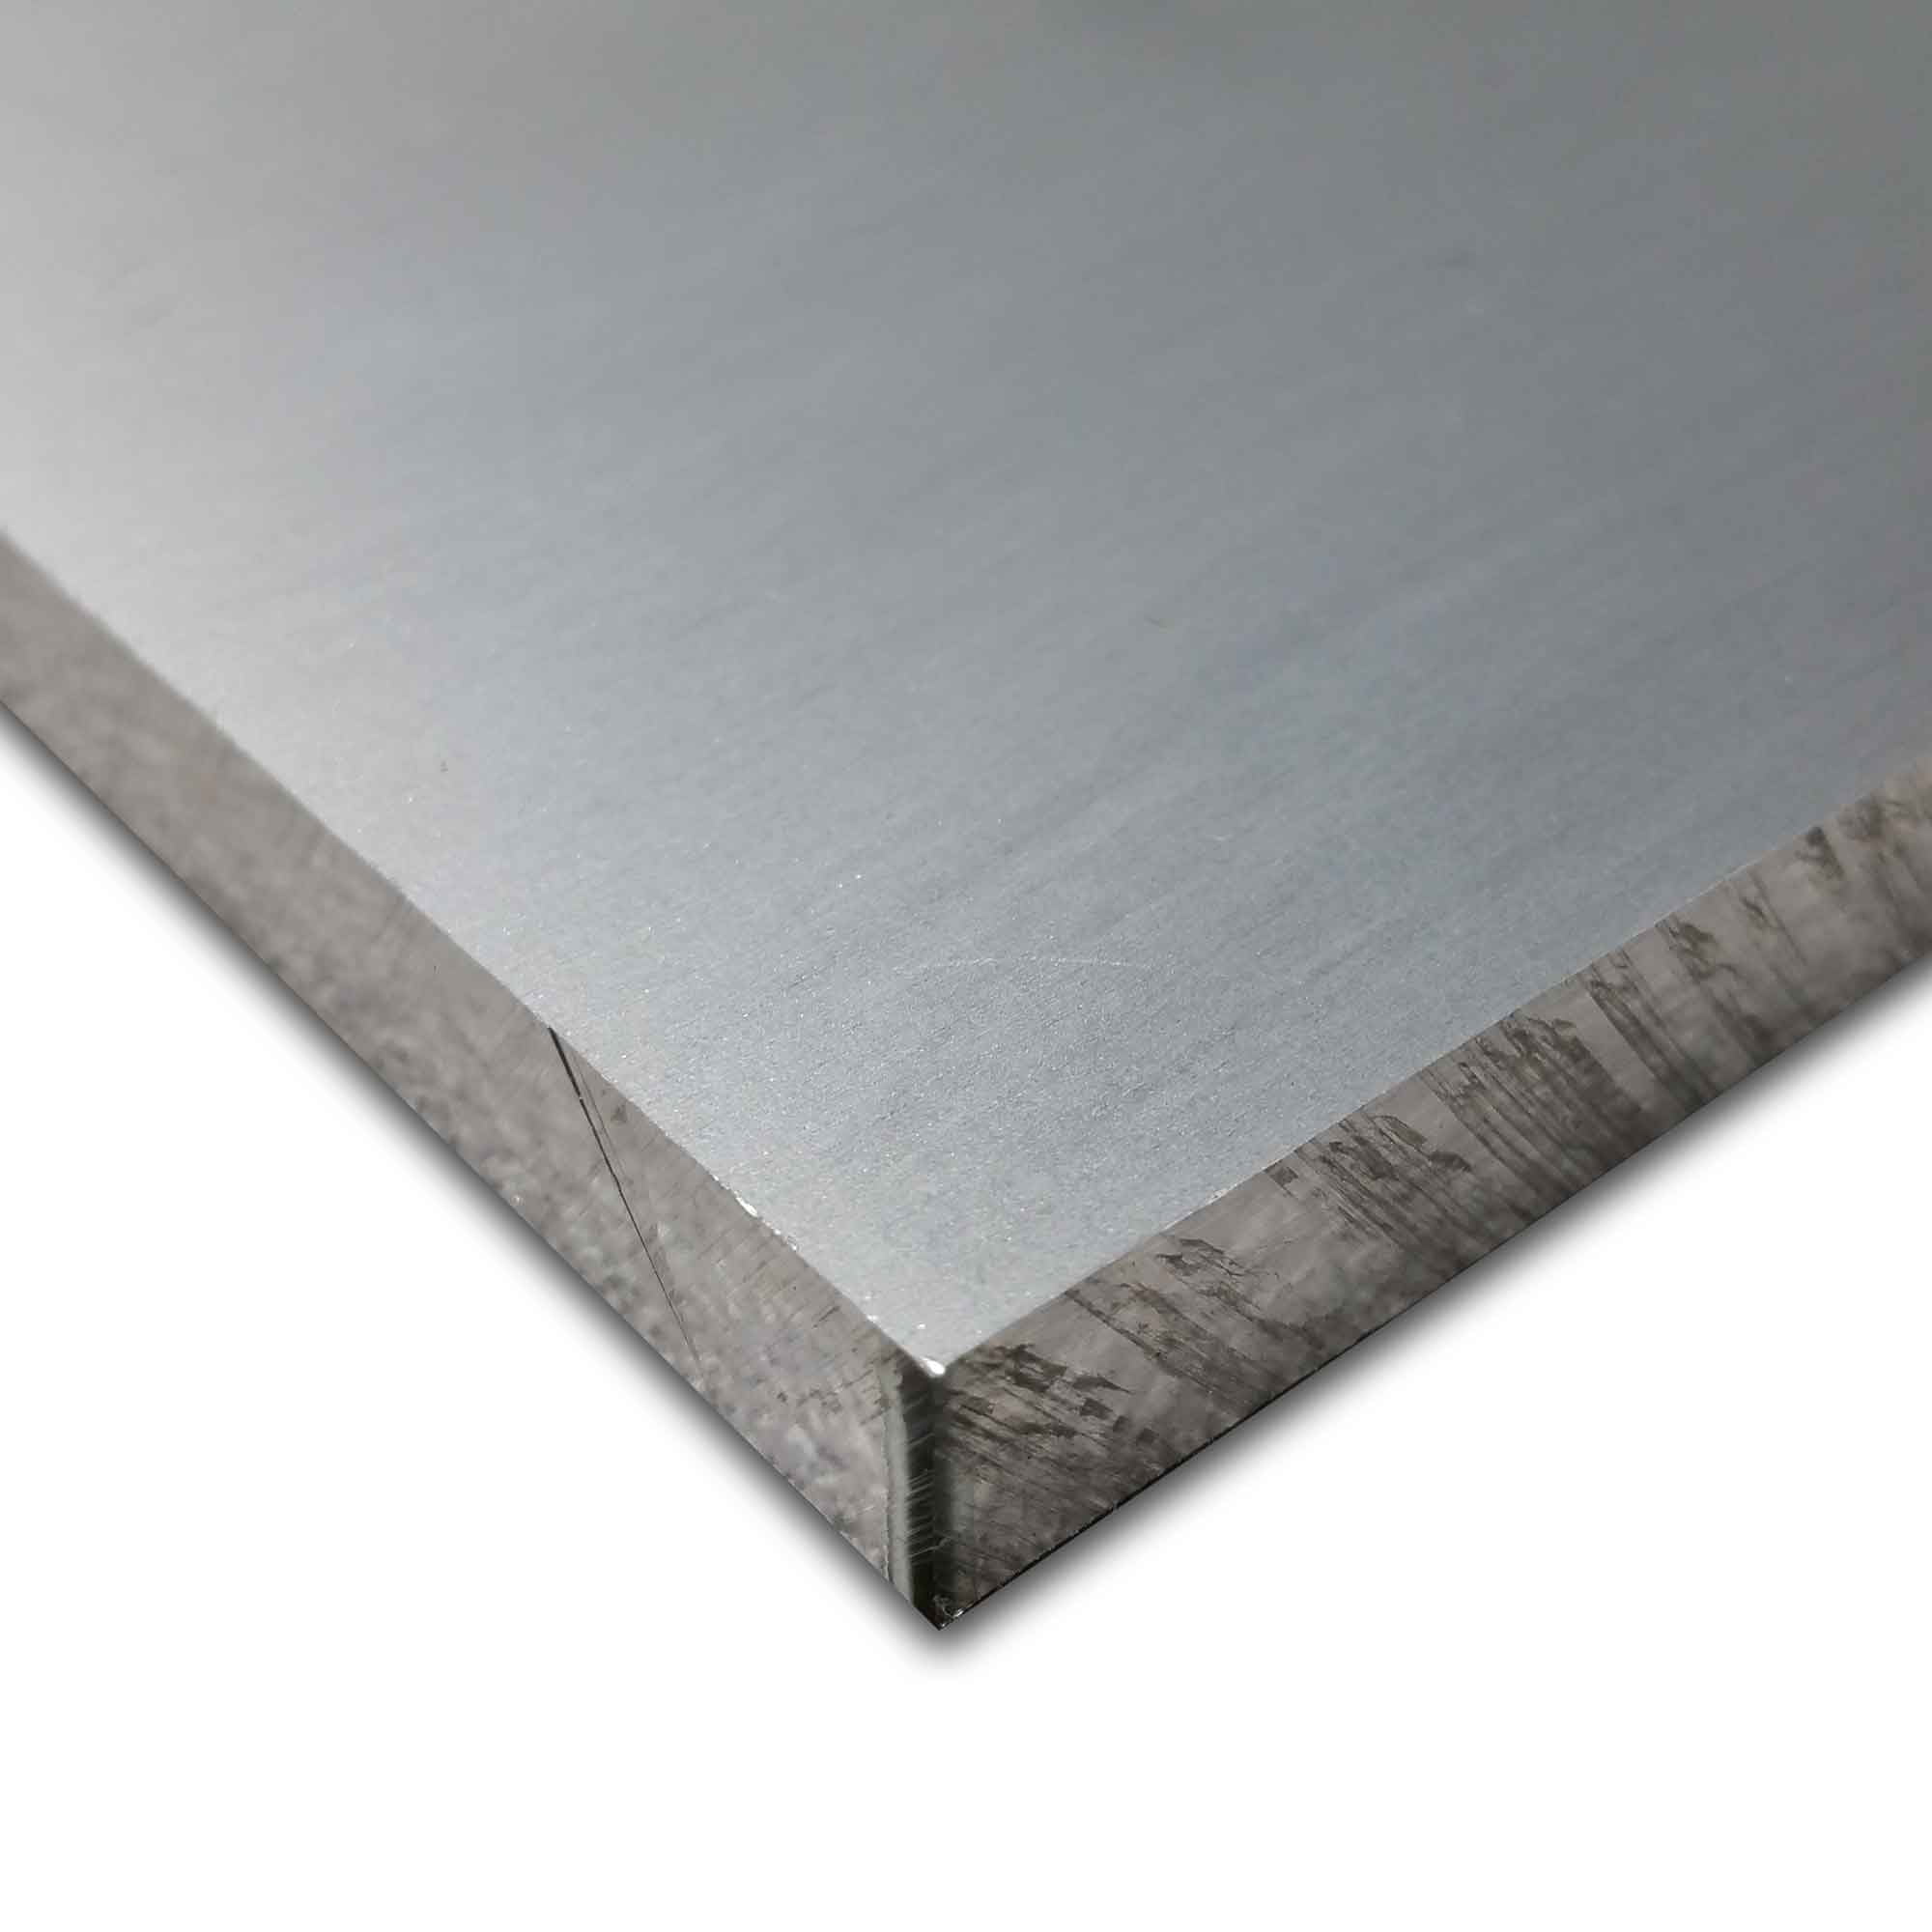 24" Length T6511 Mill Stock 6061 Plate 3/8" x 3" Aluminum Flat Bar 0.375" 